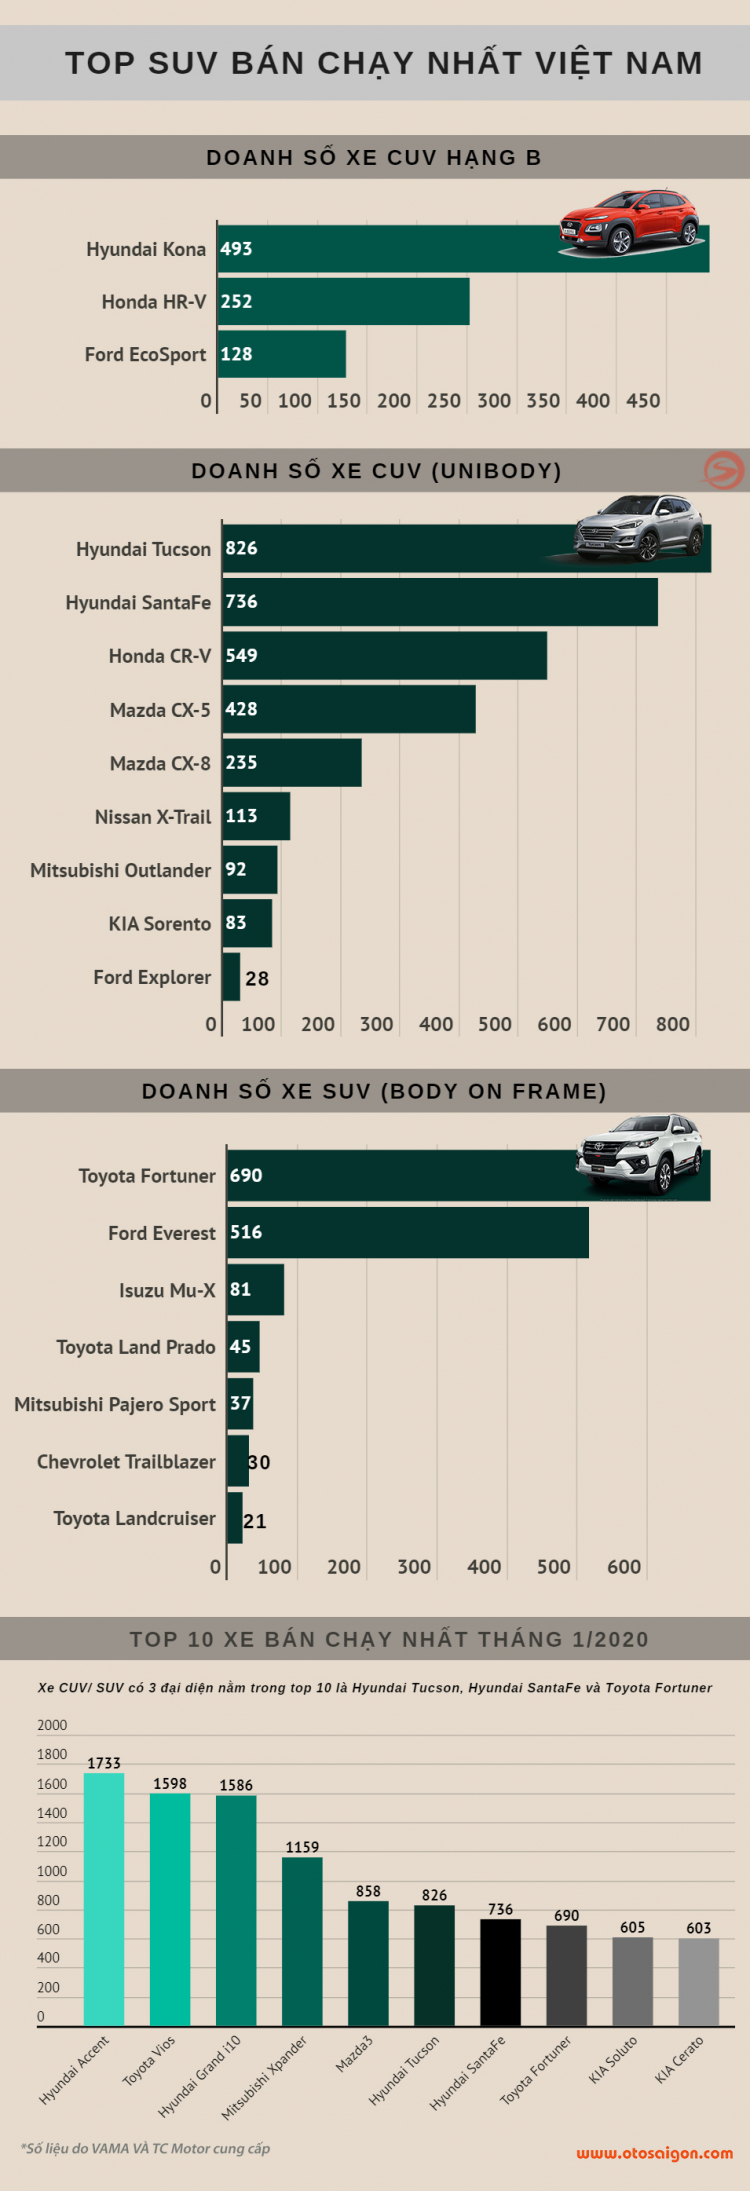 [Infographic] Top CUV/SUV bán chạy tại Việt Nam tháng 1/2020: Hyundai Tucson bất ngờ dẫn đầu